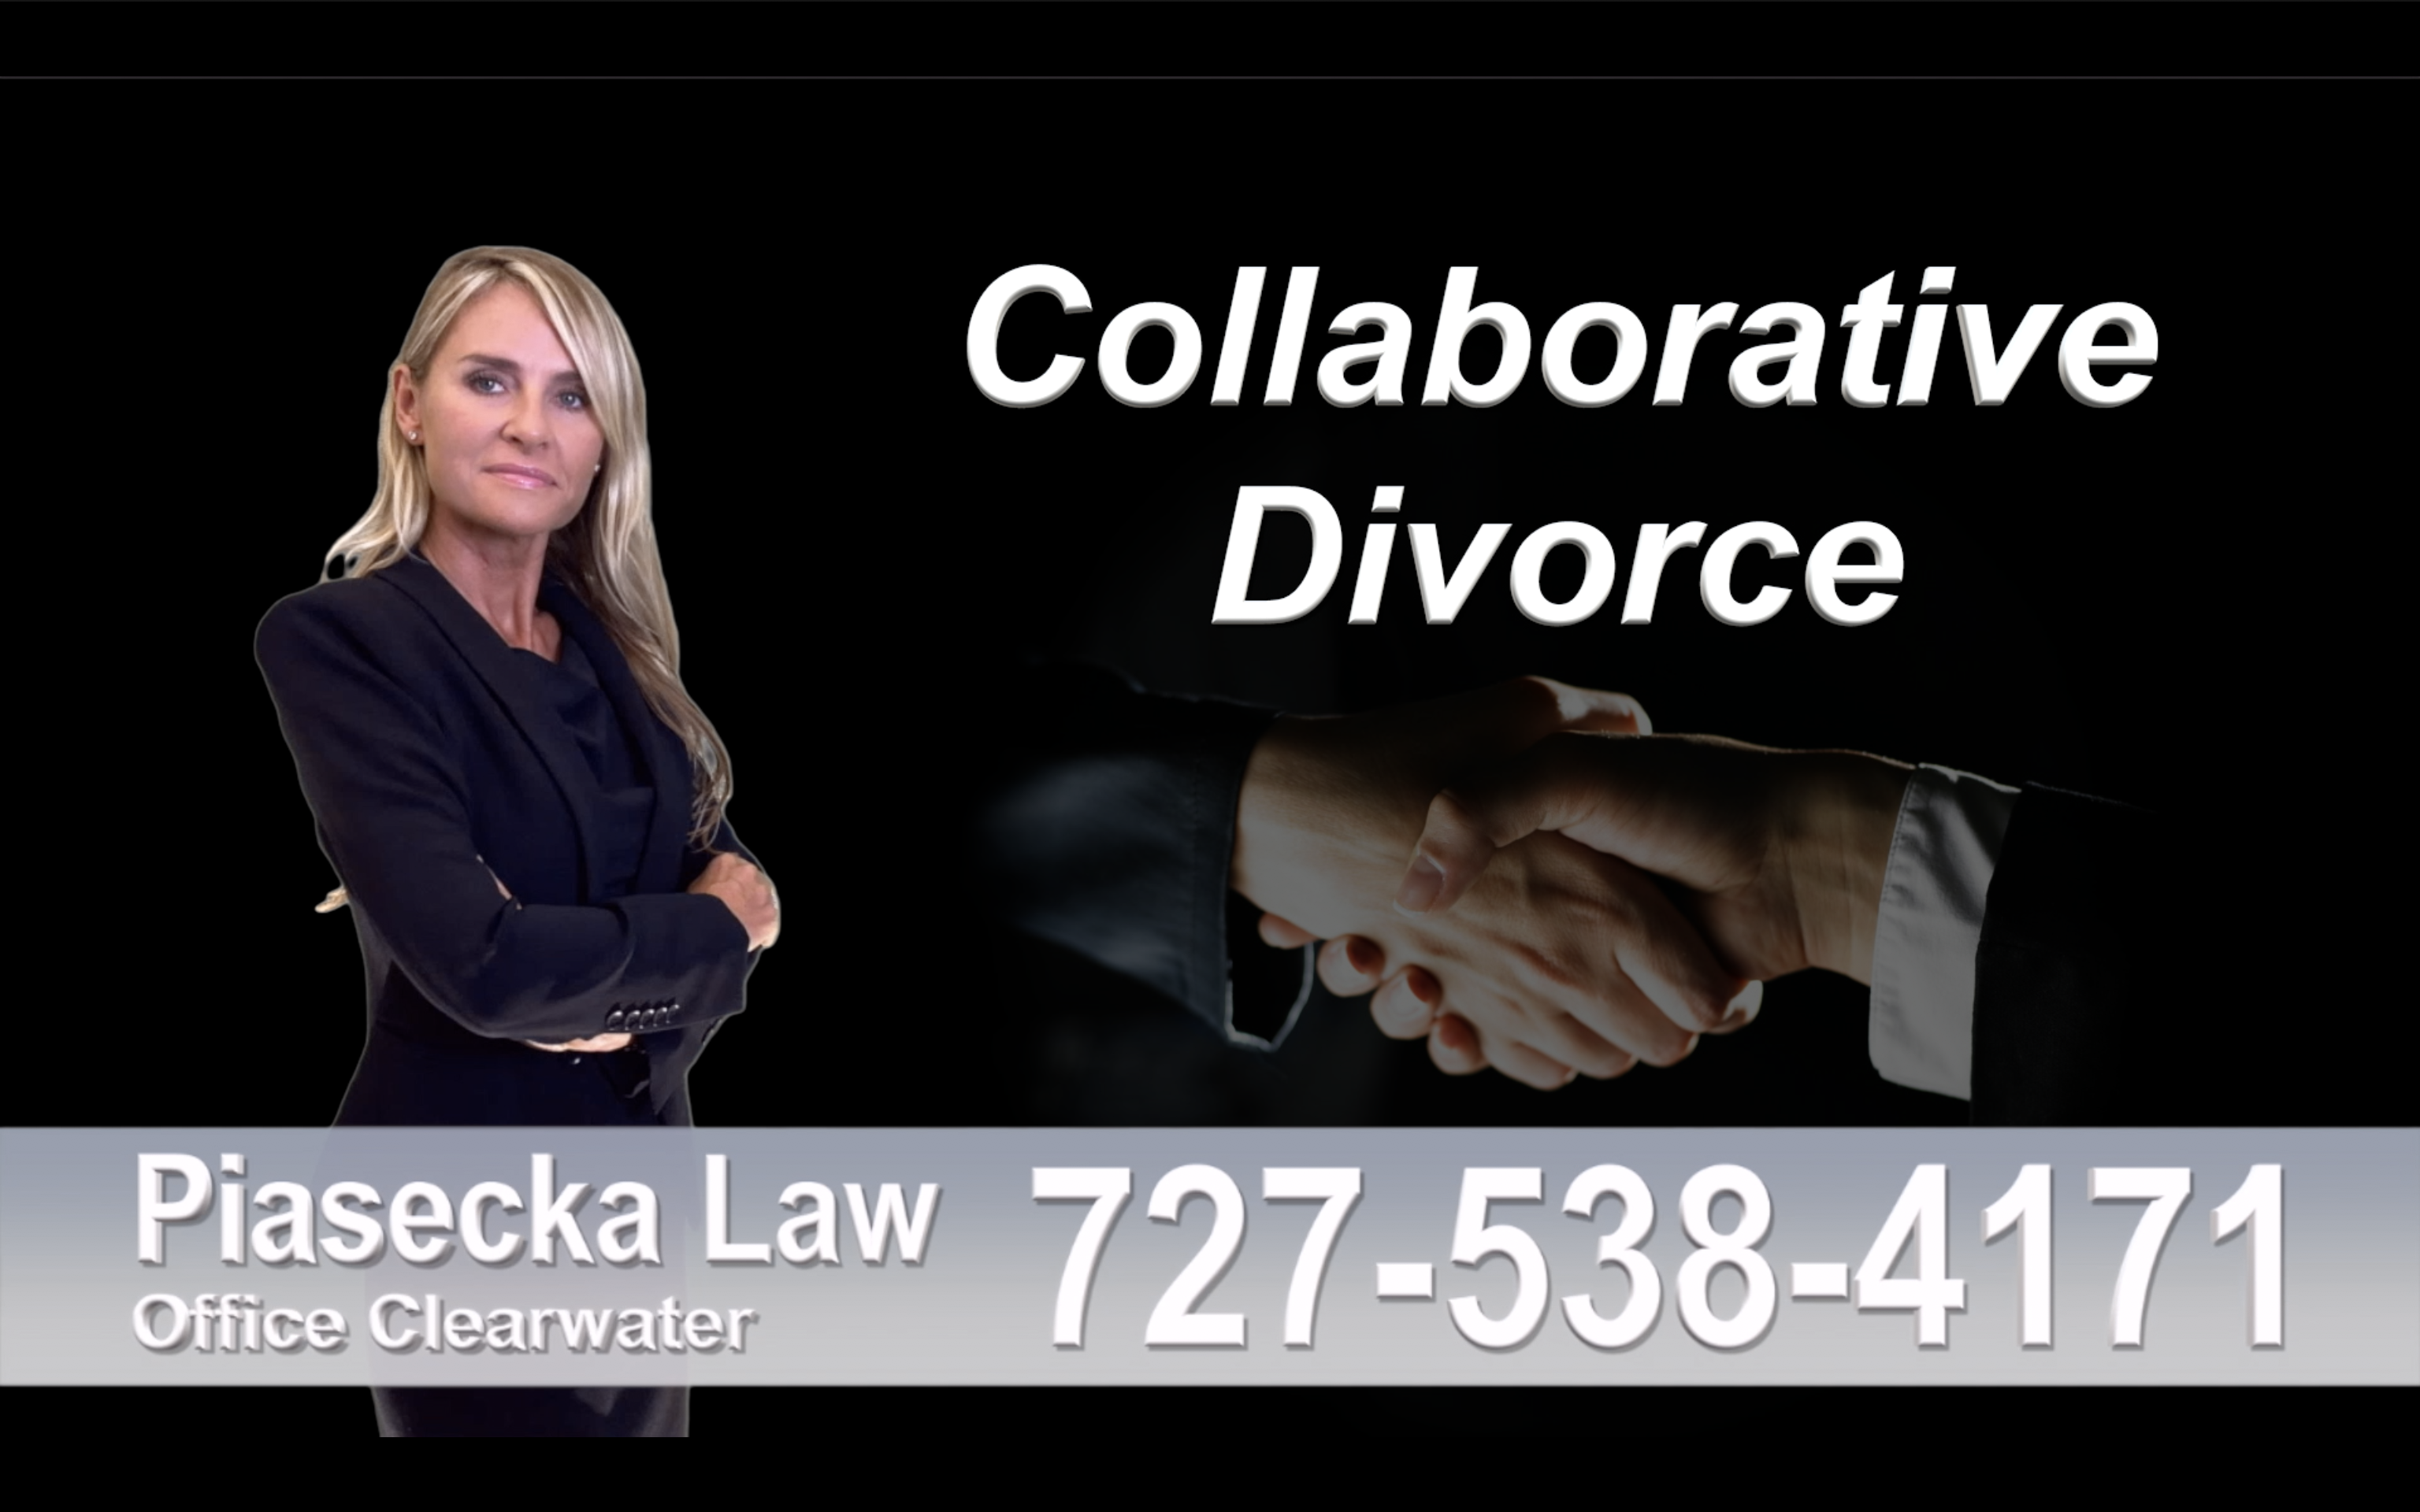 Cape Coral Collaborative, Divorce, Attorney, Agnieszka, Piasecka, Prawnik, Rozwodowy, Rozwód, Adwokat, rozwodowy, Najlepszy, Best, Collaborative, Divorce, Lawyers